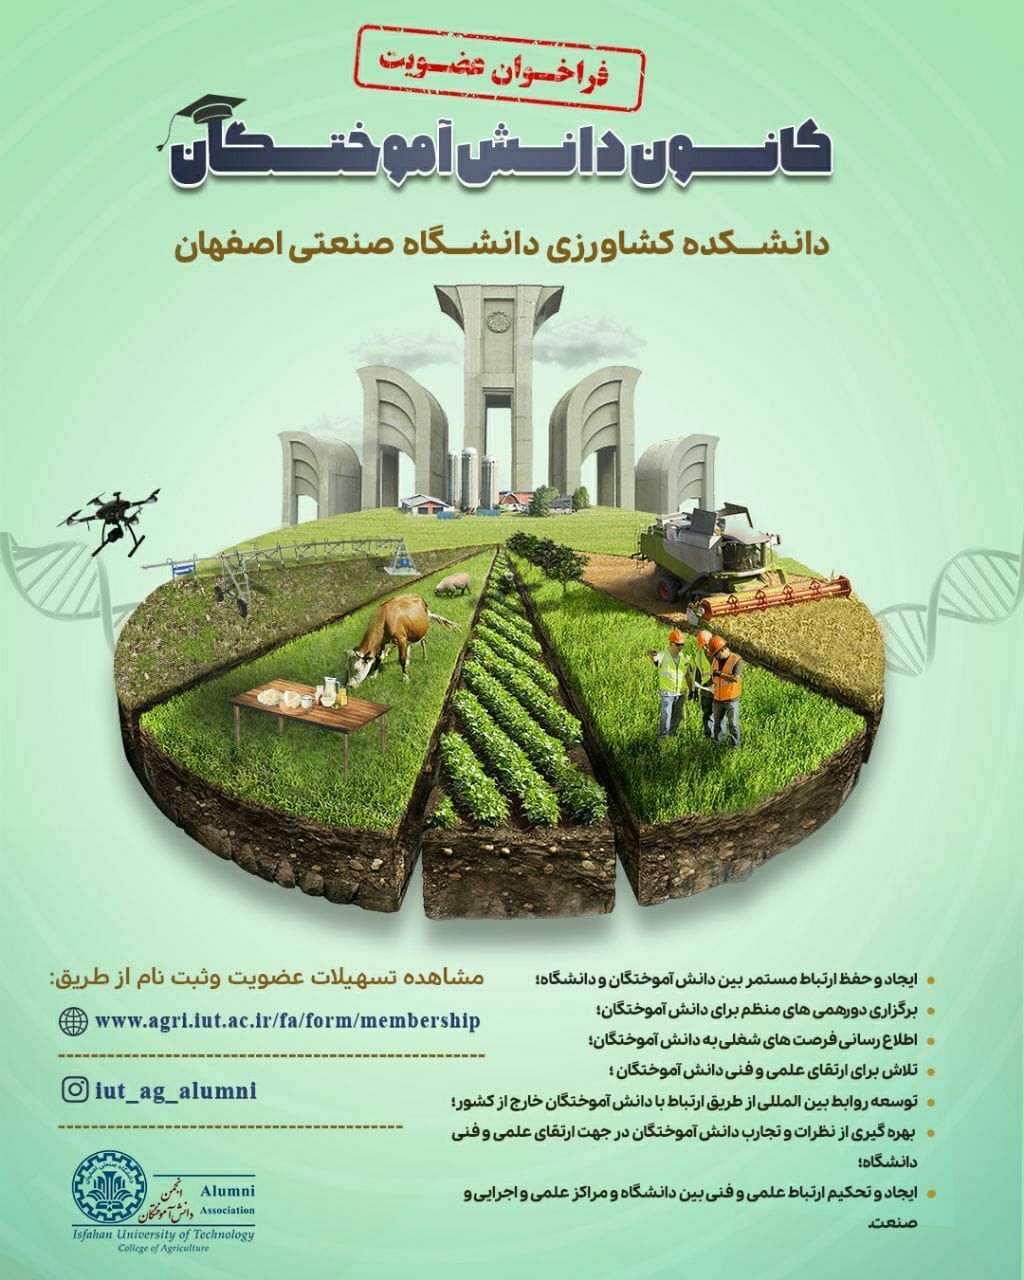 اولین انجمن دانش آموختگان تخصصی در دانشگاه صنعتی اصفهان تأسیس شد